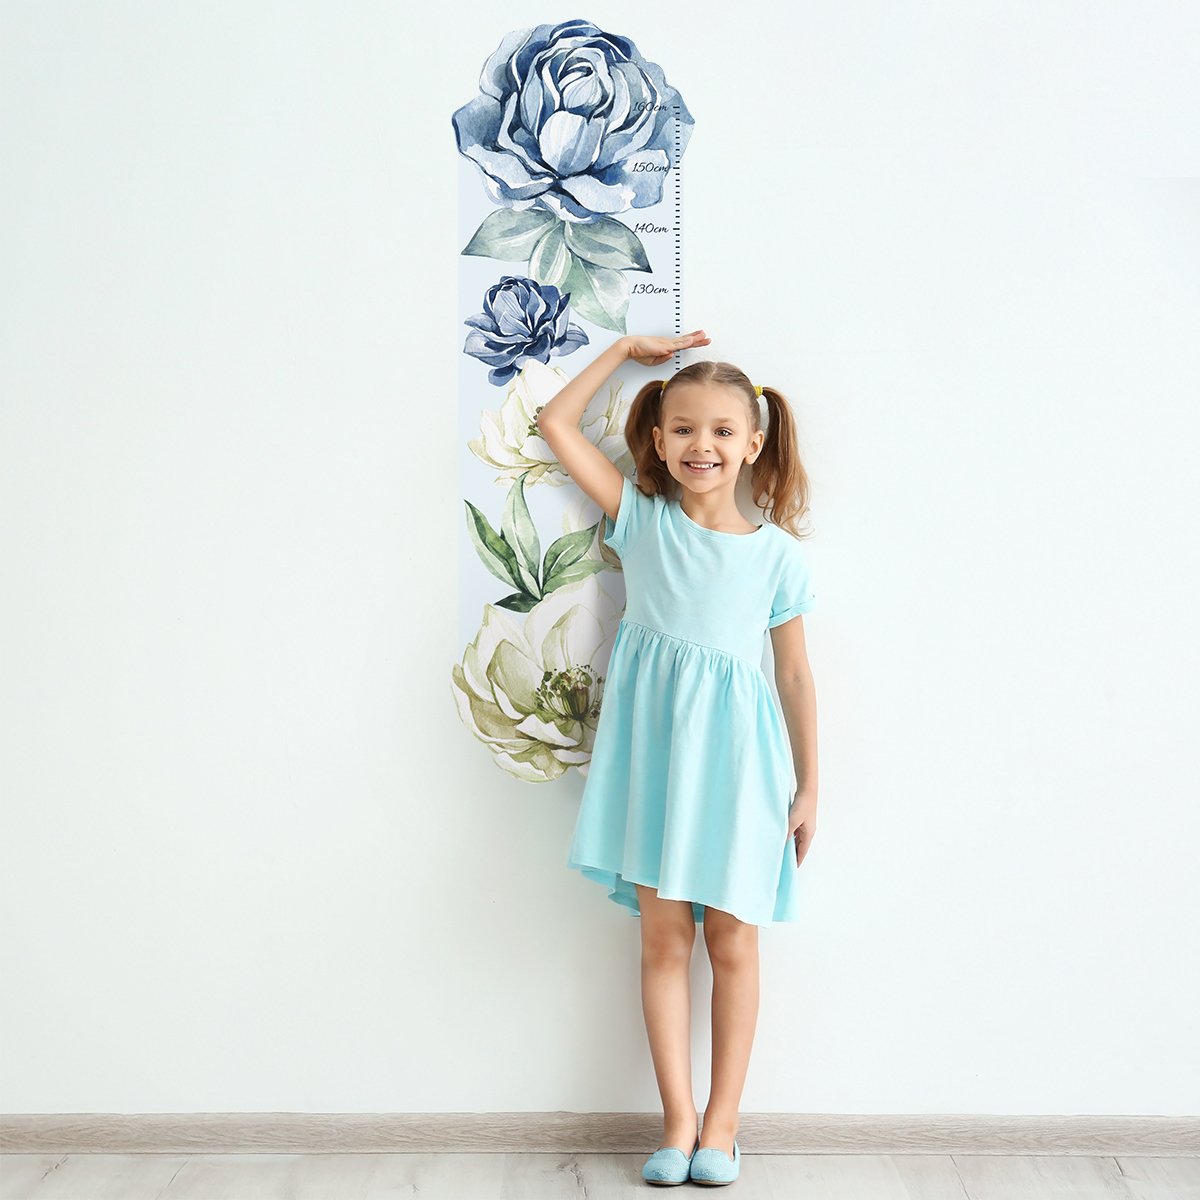 Naklejka na ścianę miarka wzrostu dla dziewczynki - kwiaty#kolor_niebieski